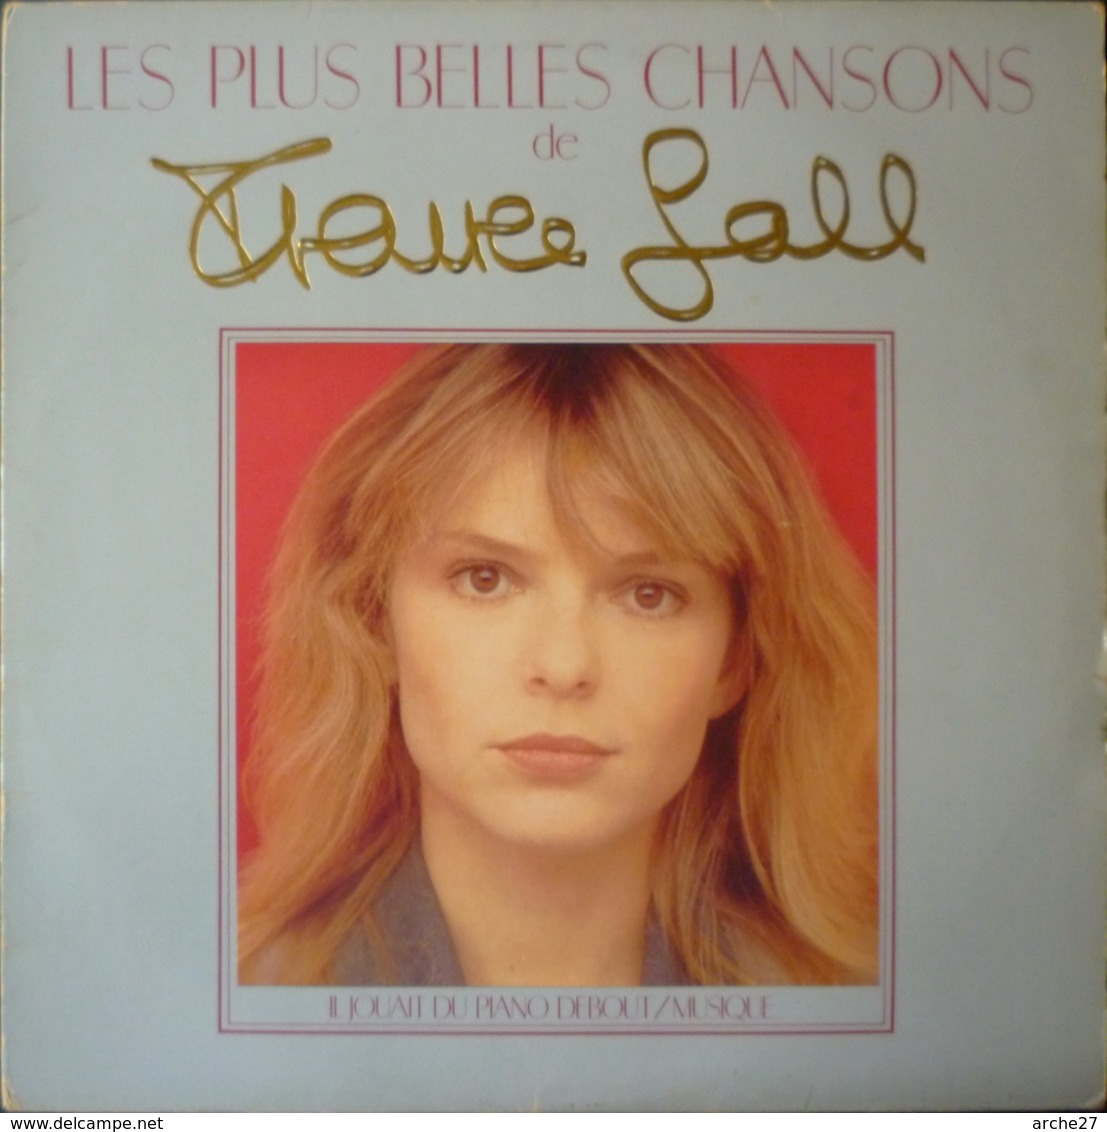 FRANCE GALL - LP - 33T - Disque Vinyle - Les Plus Belles Chansons - 50823 - Sonstige - Franz. Chansons